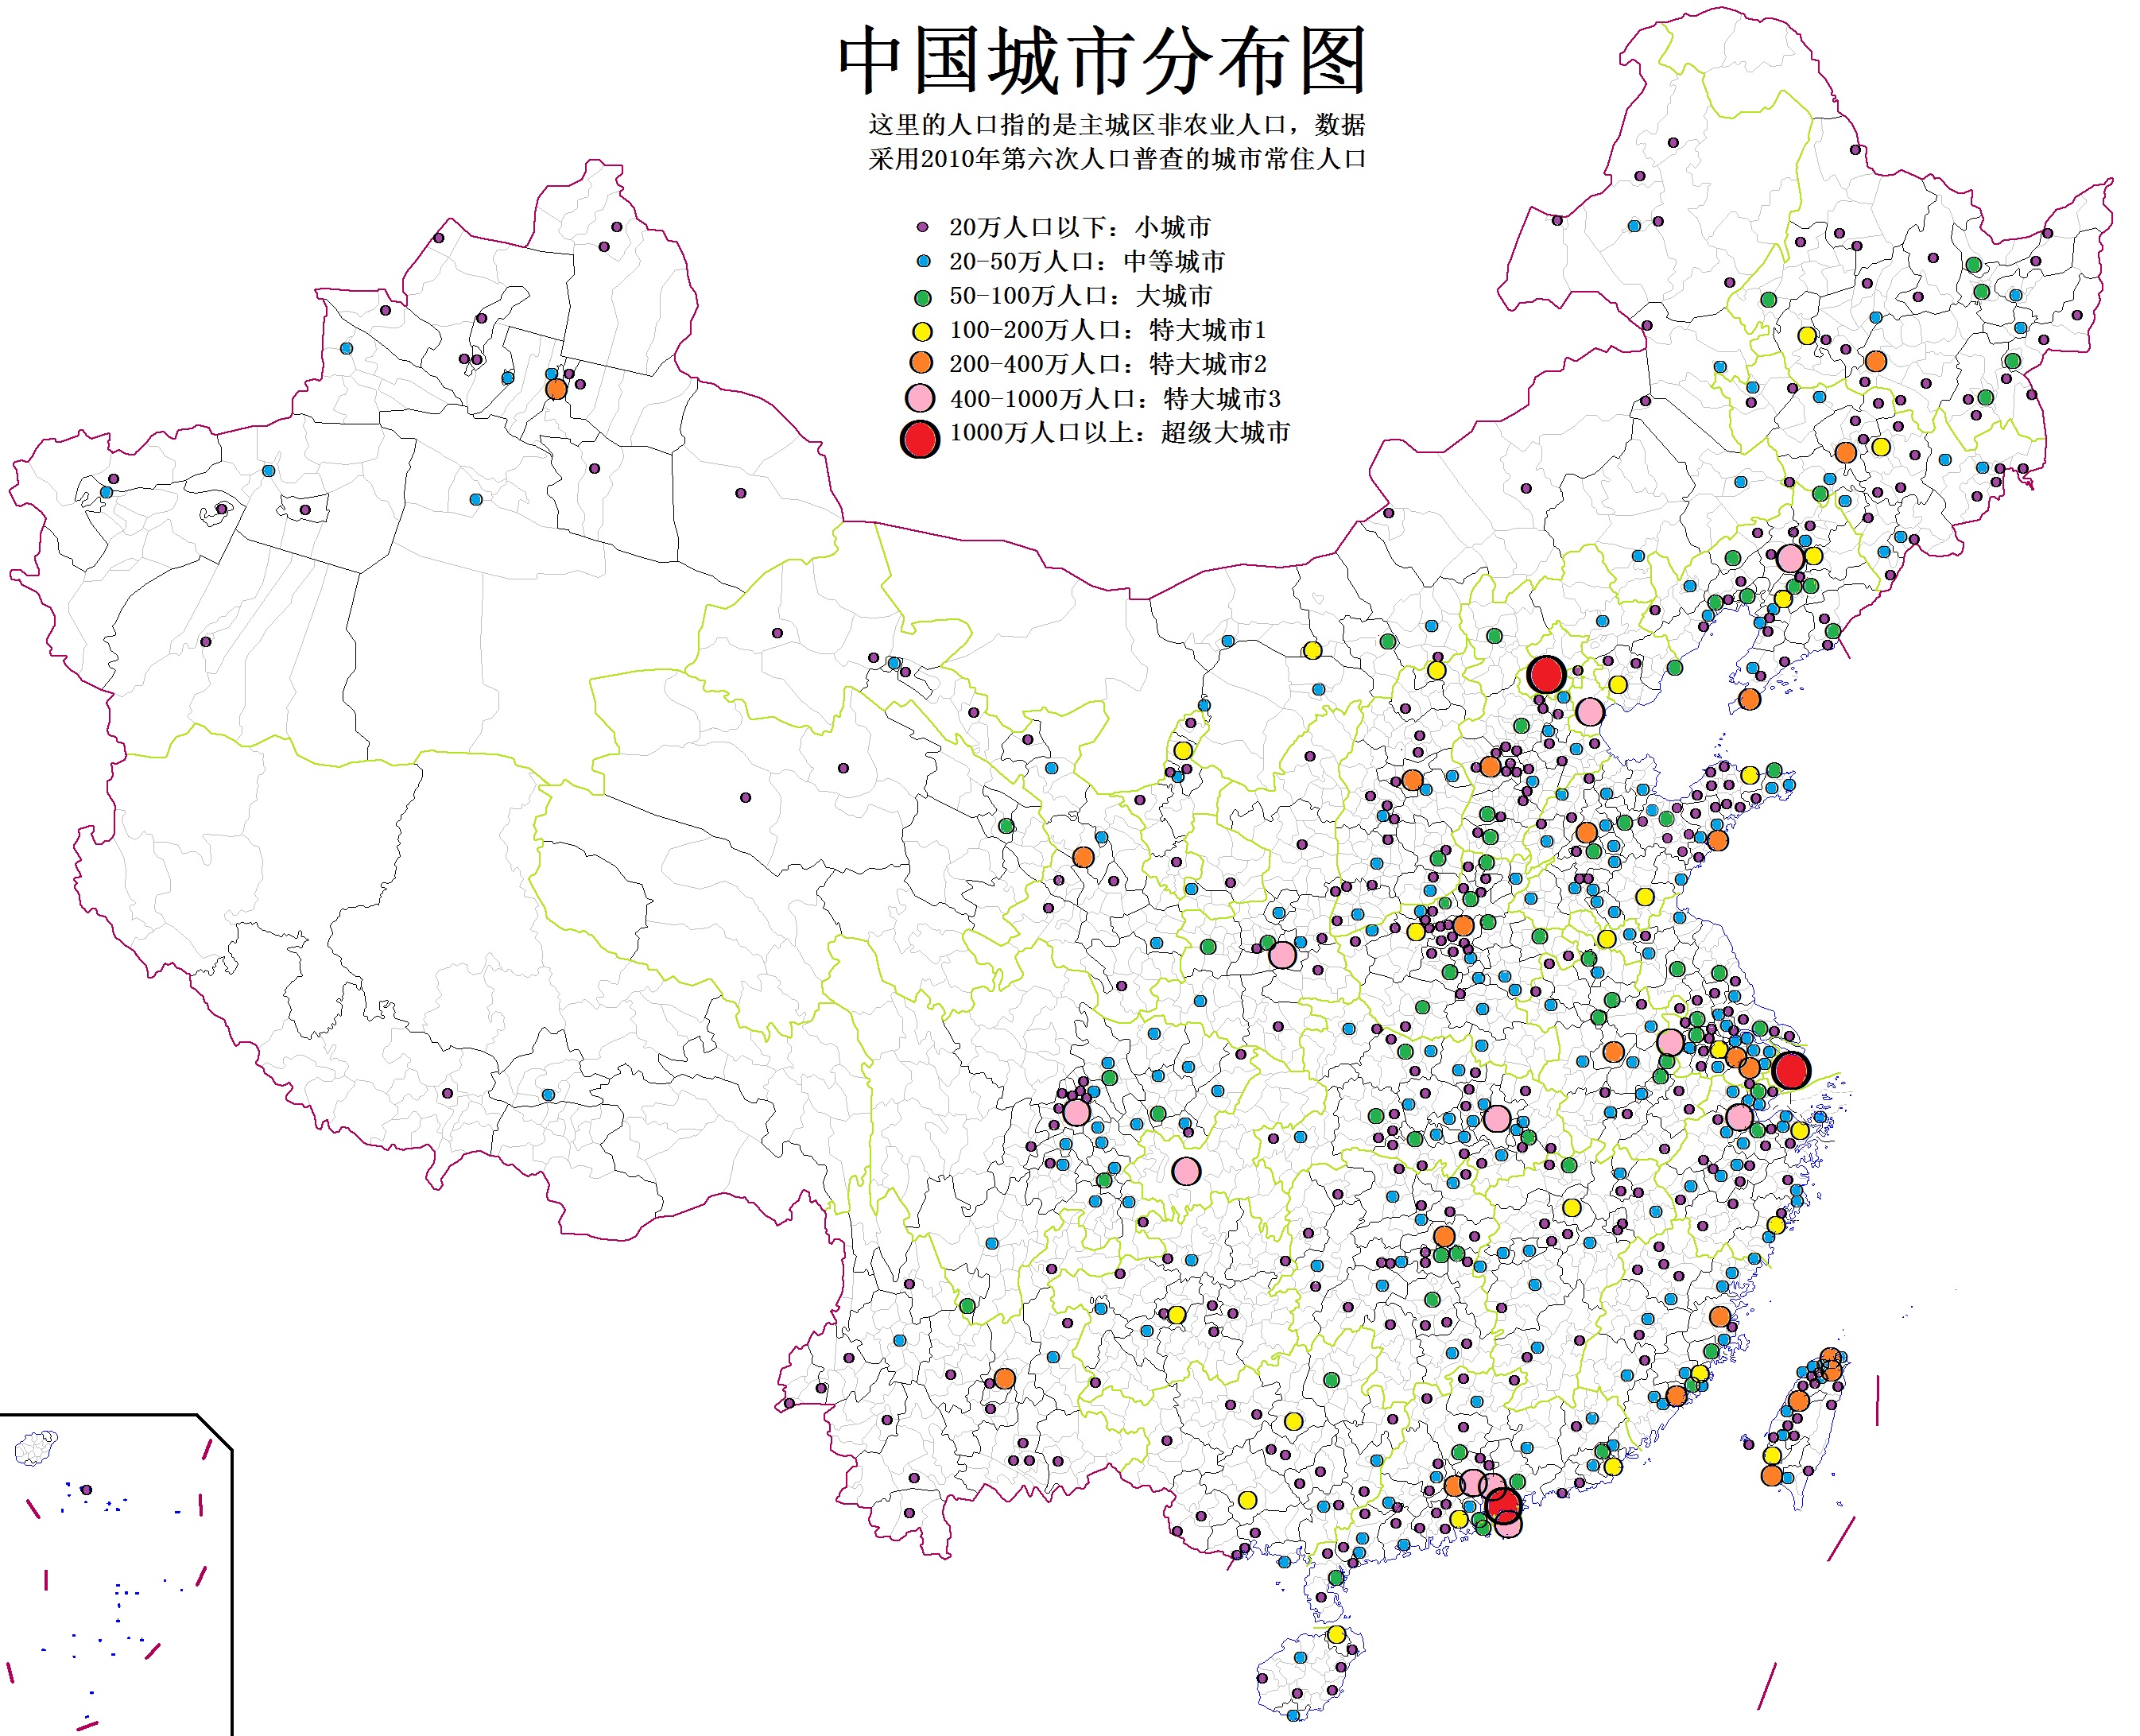 区划改革 中国城市分布图  市辖区常住人口-建成区与城市主城区未相连